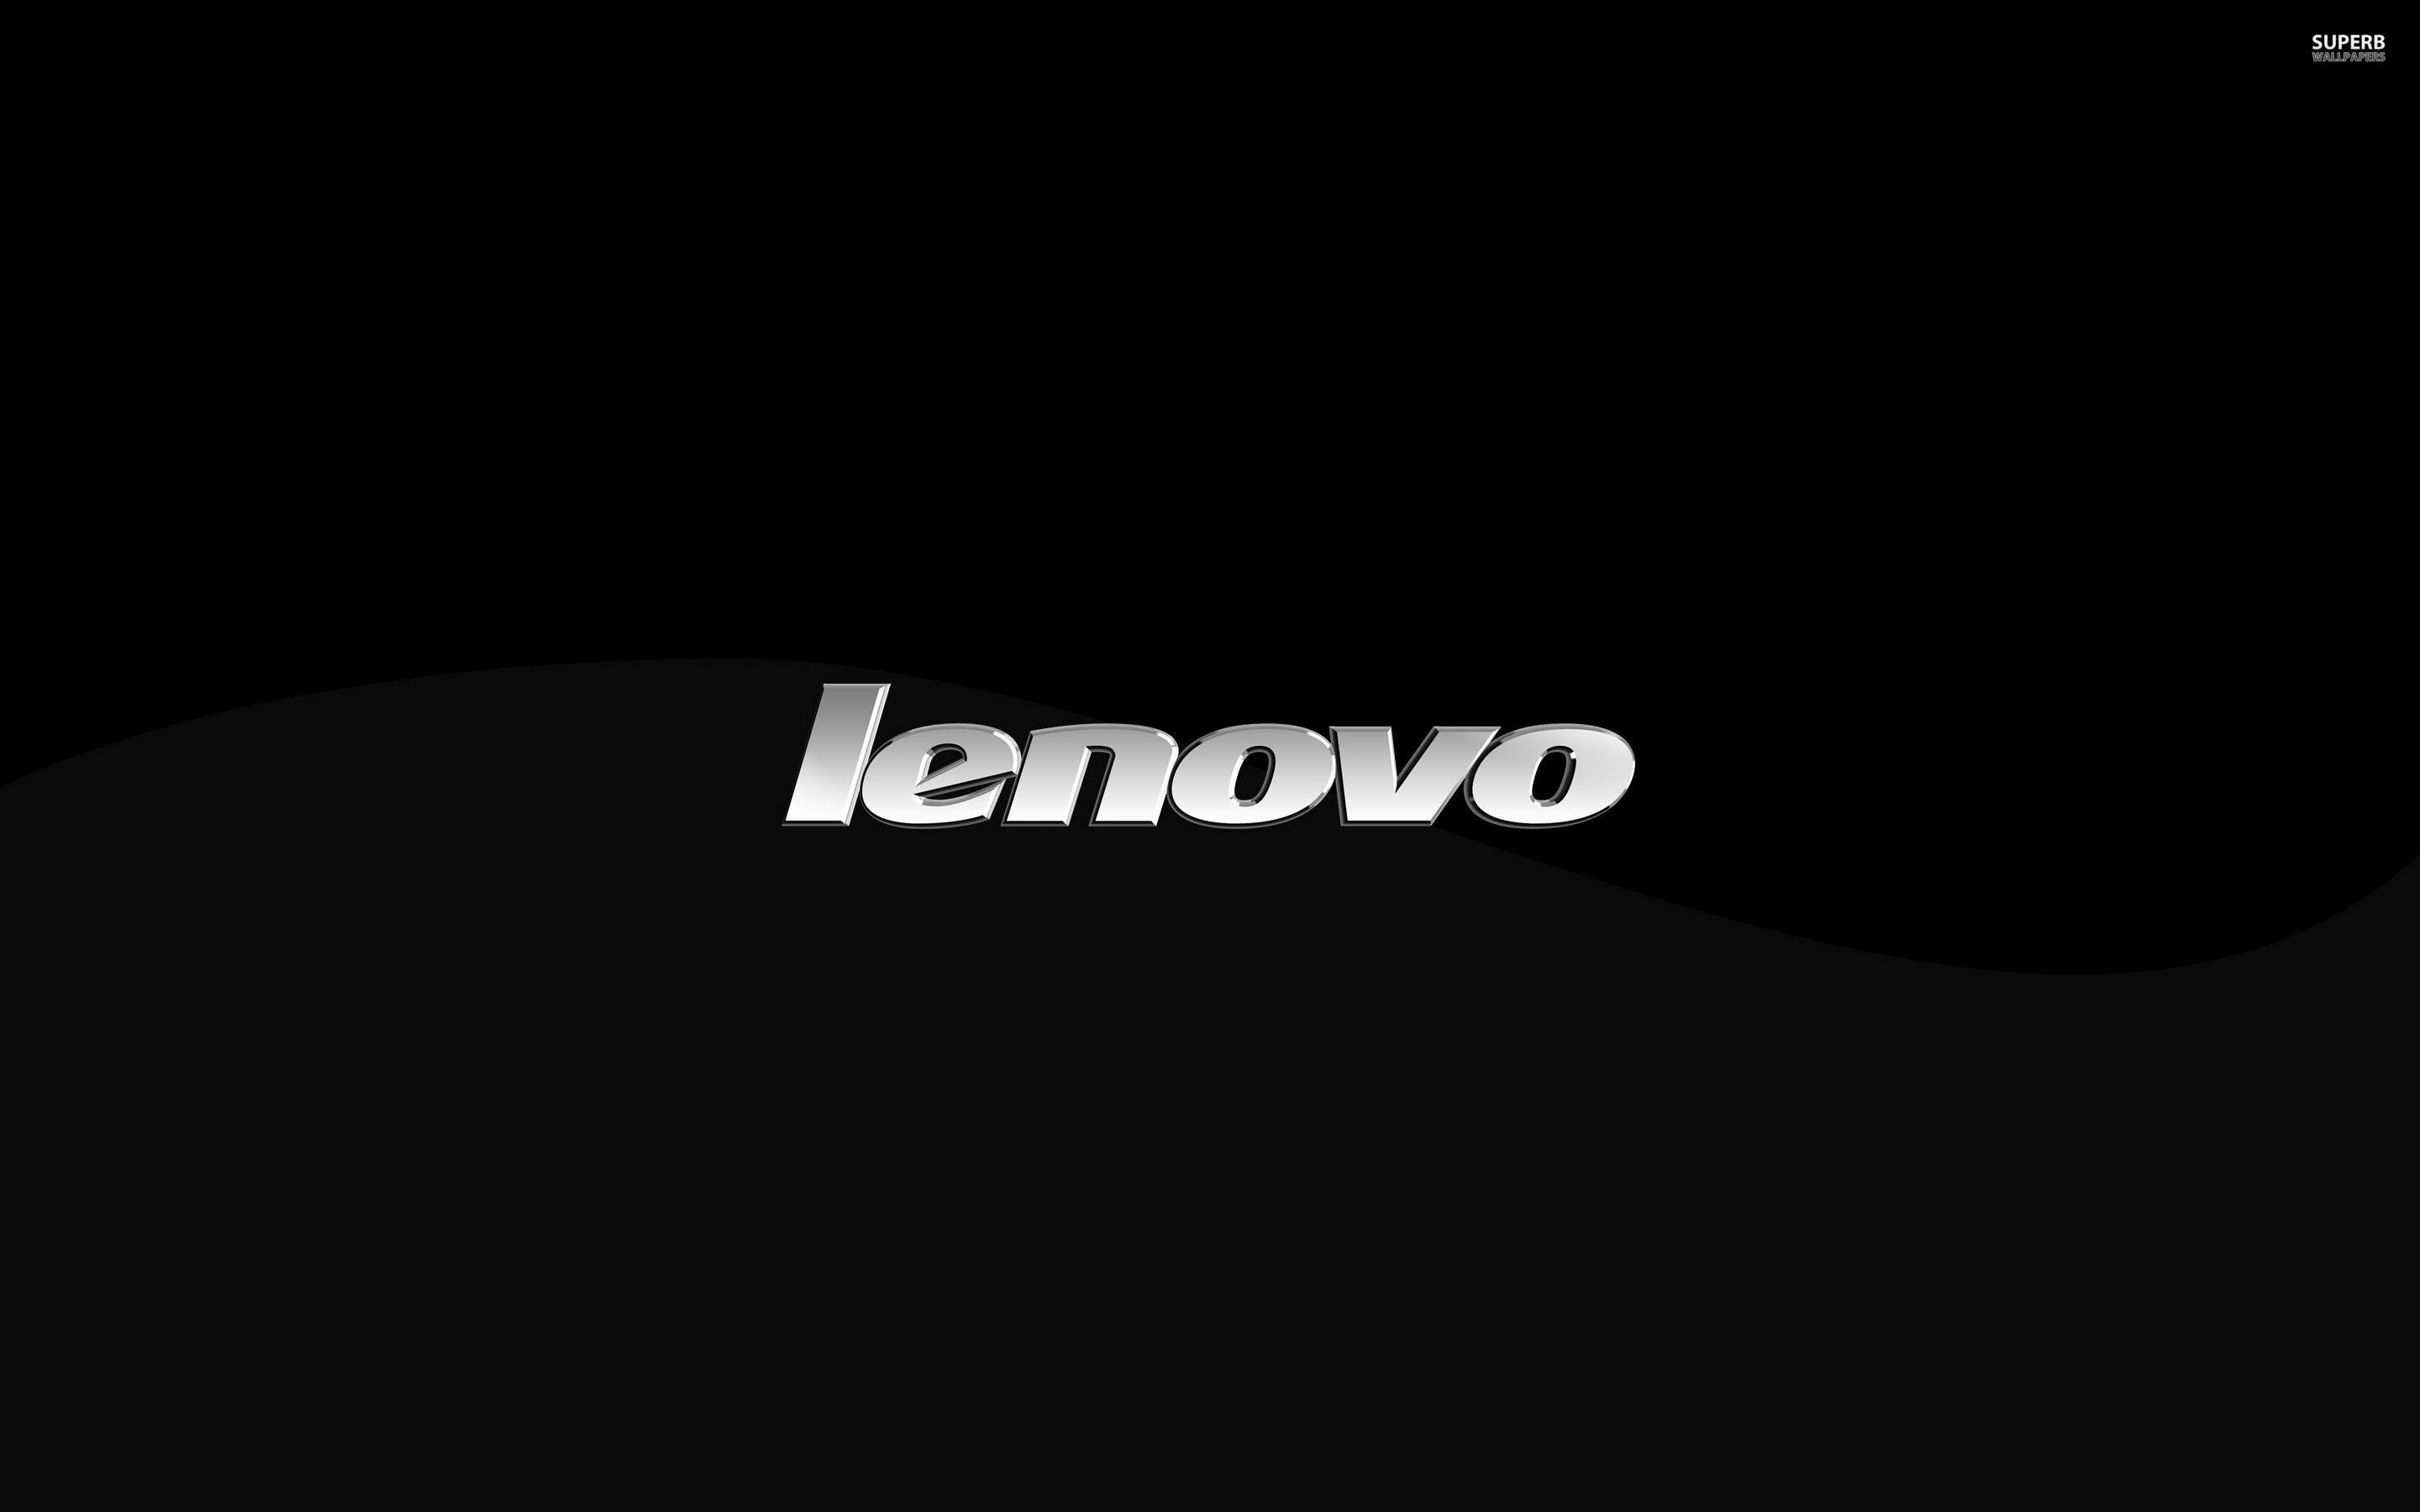 Lenovo Wallpaper Theme